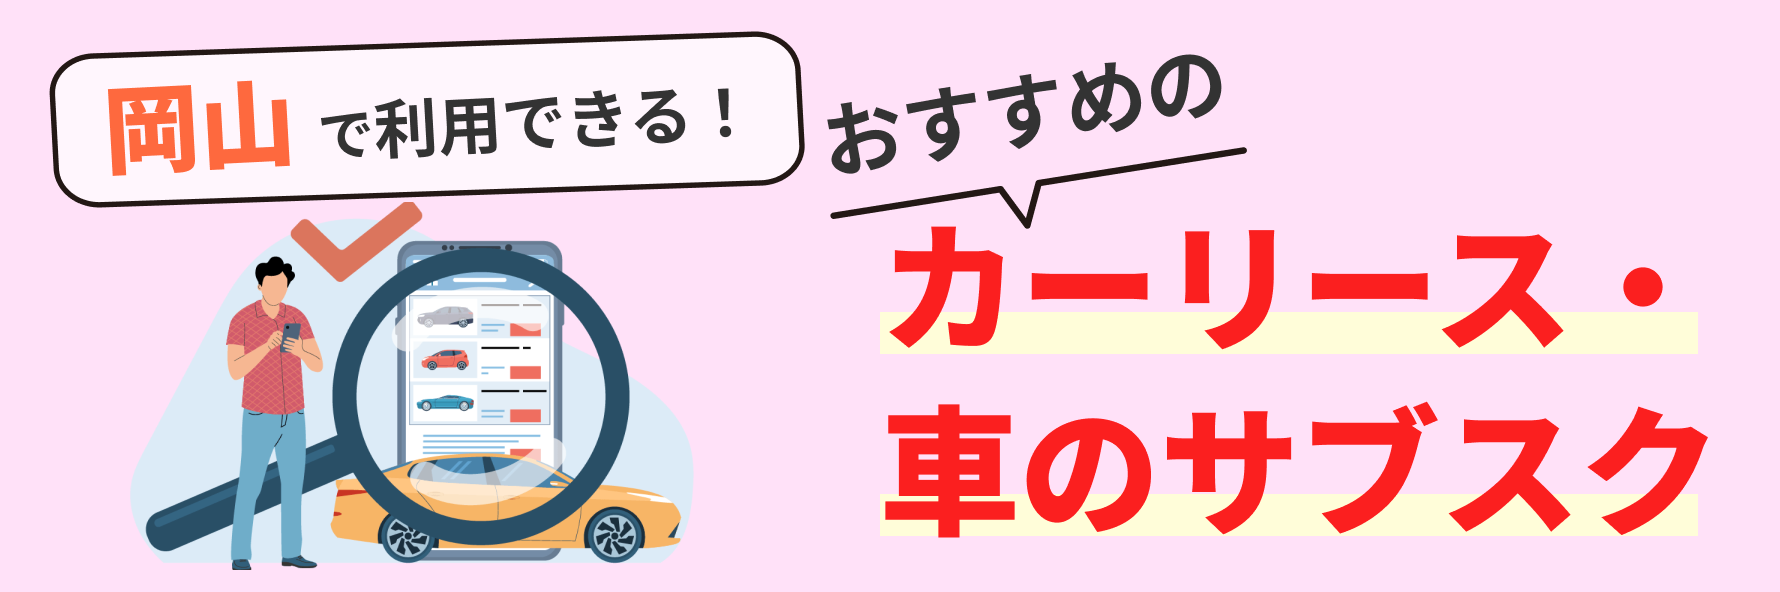 岡山で利用できるカーリース会社（車のサブスク）について、料金やサービスの特徴を紹介するとともに、カーリース会社の選び方について解説する記事であることを示すタイトル下画像